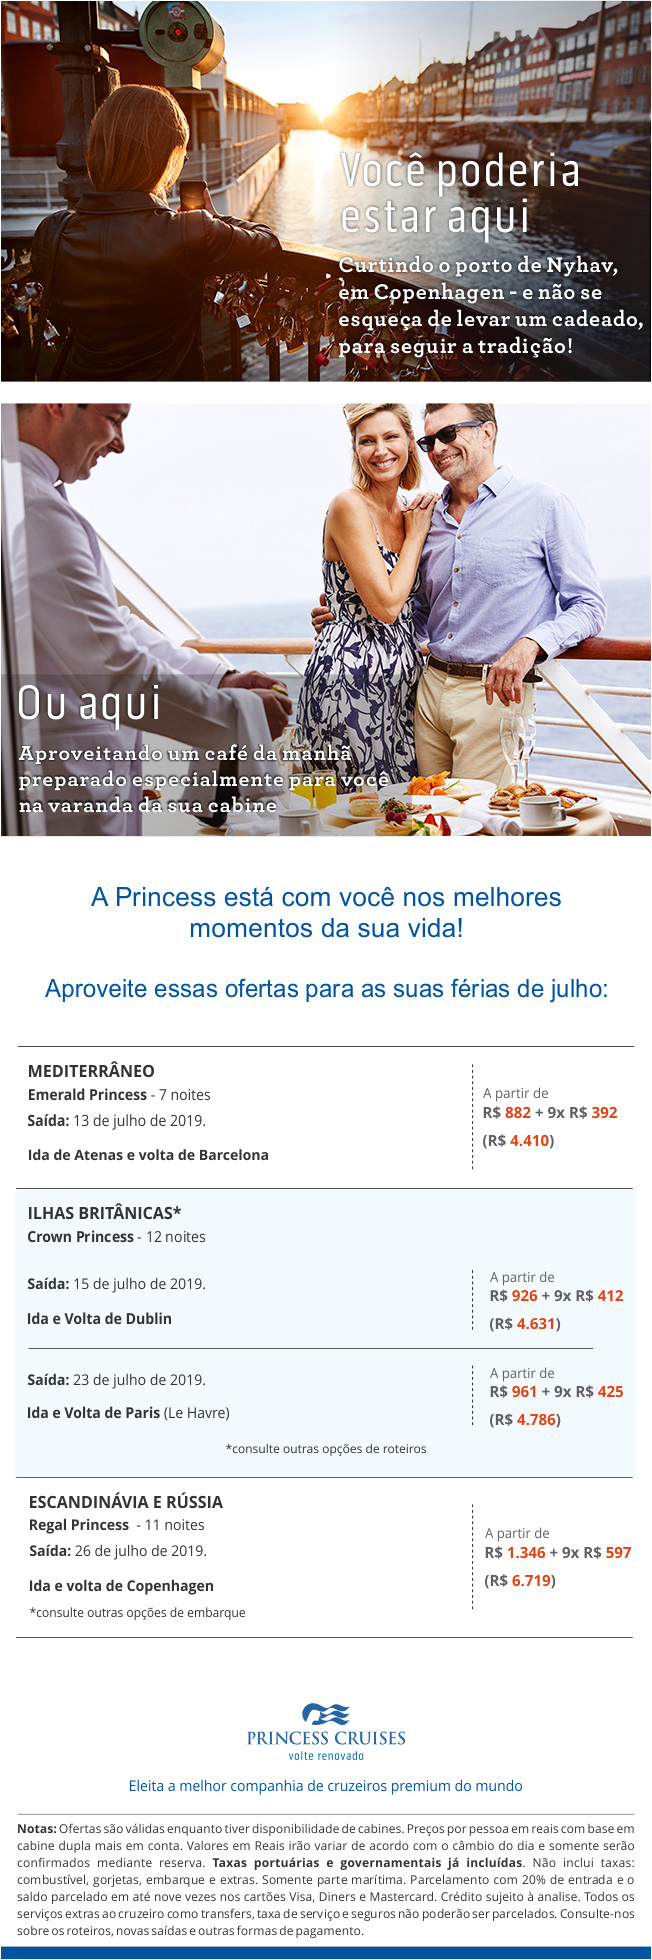 Princess – Cruzeiros especiais no verão europeu para as férias de julho.